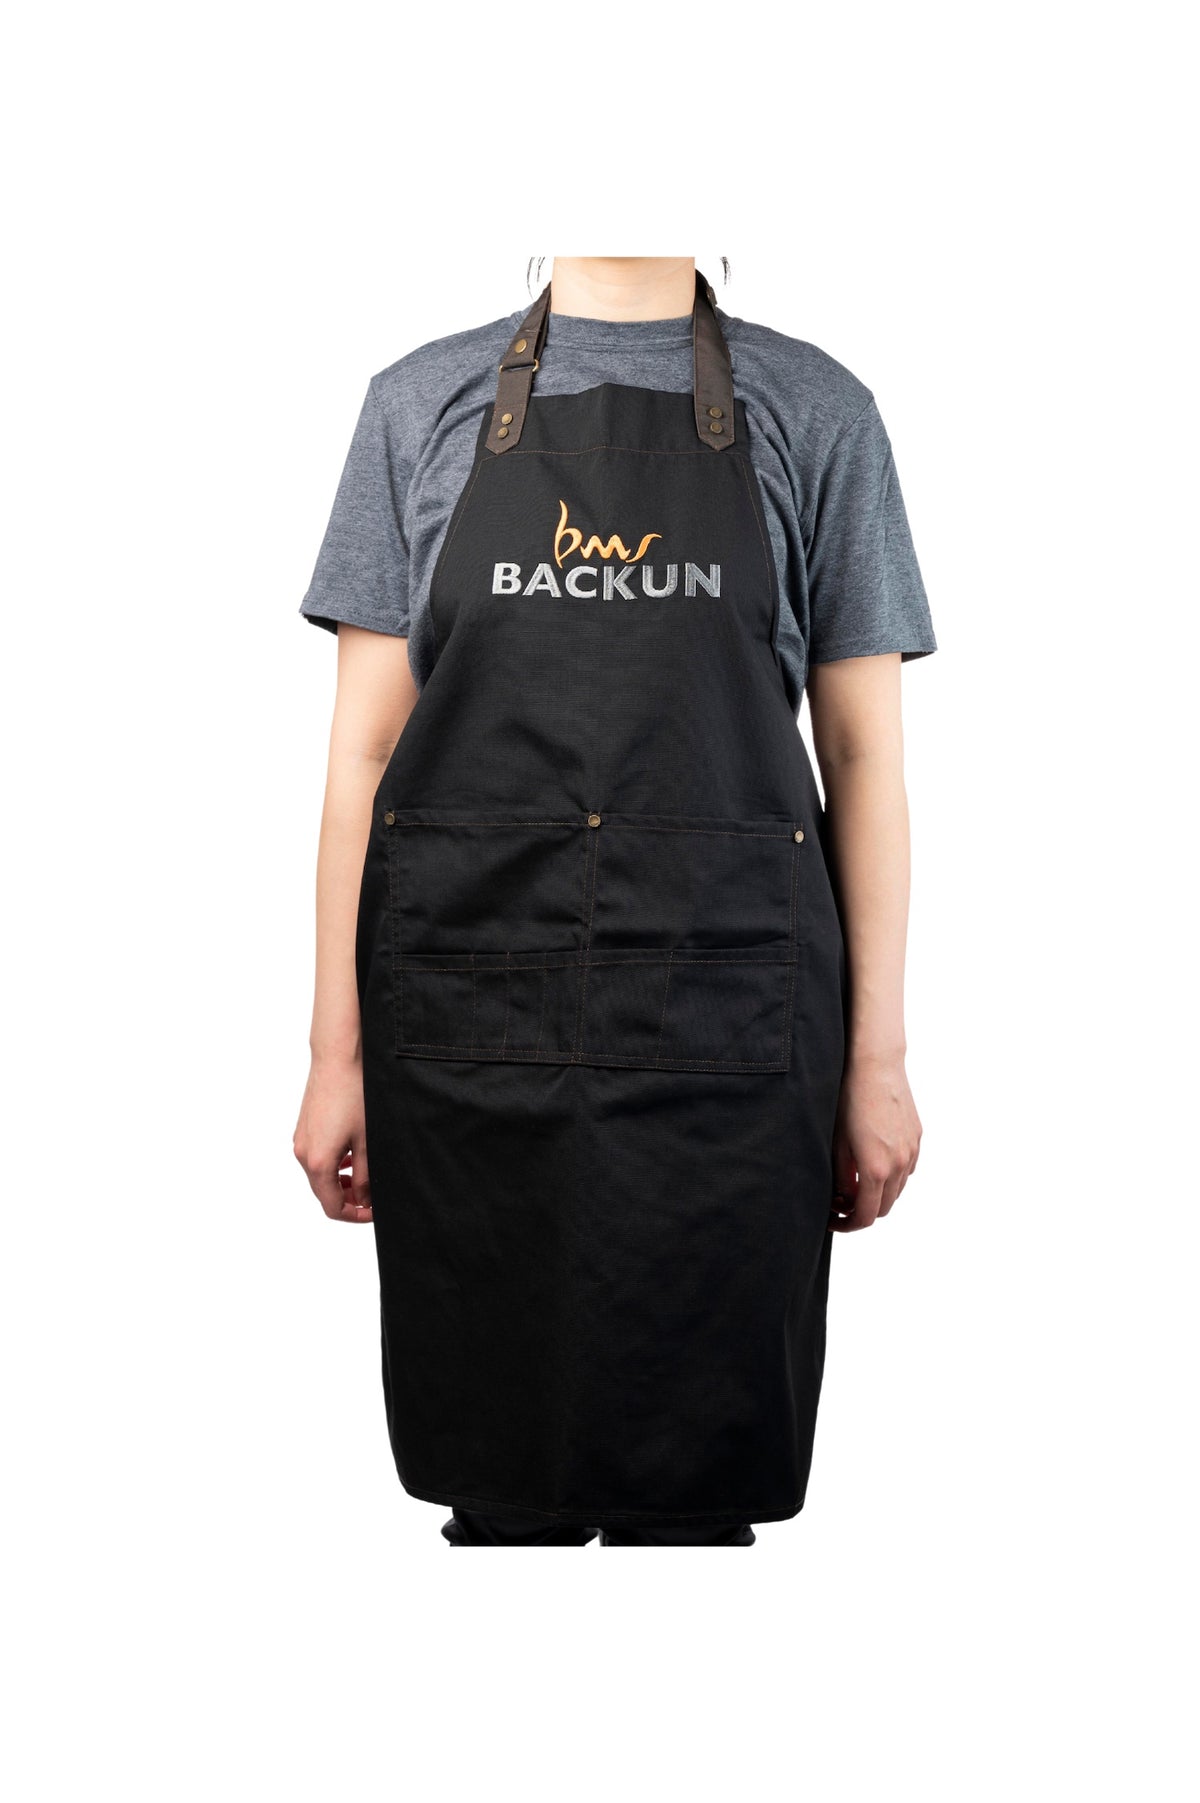 backun-apron-1